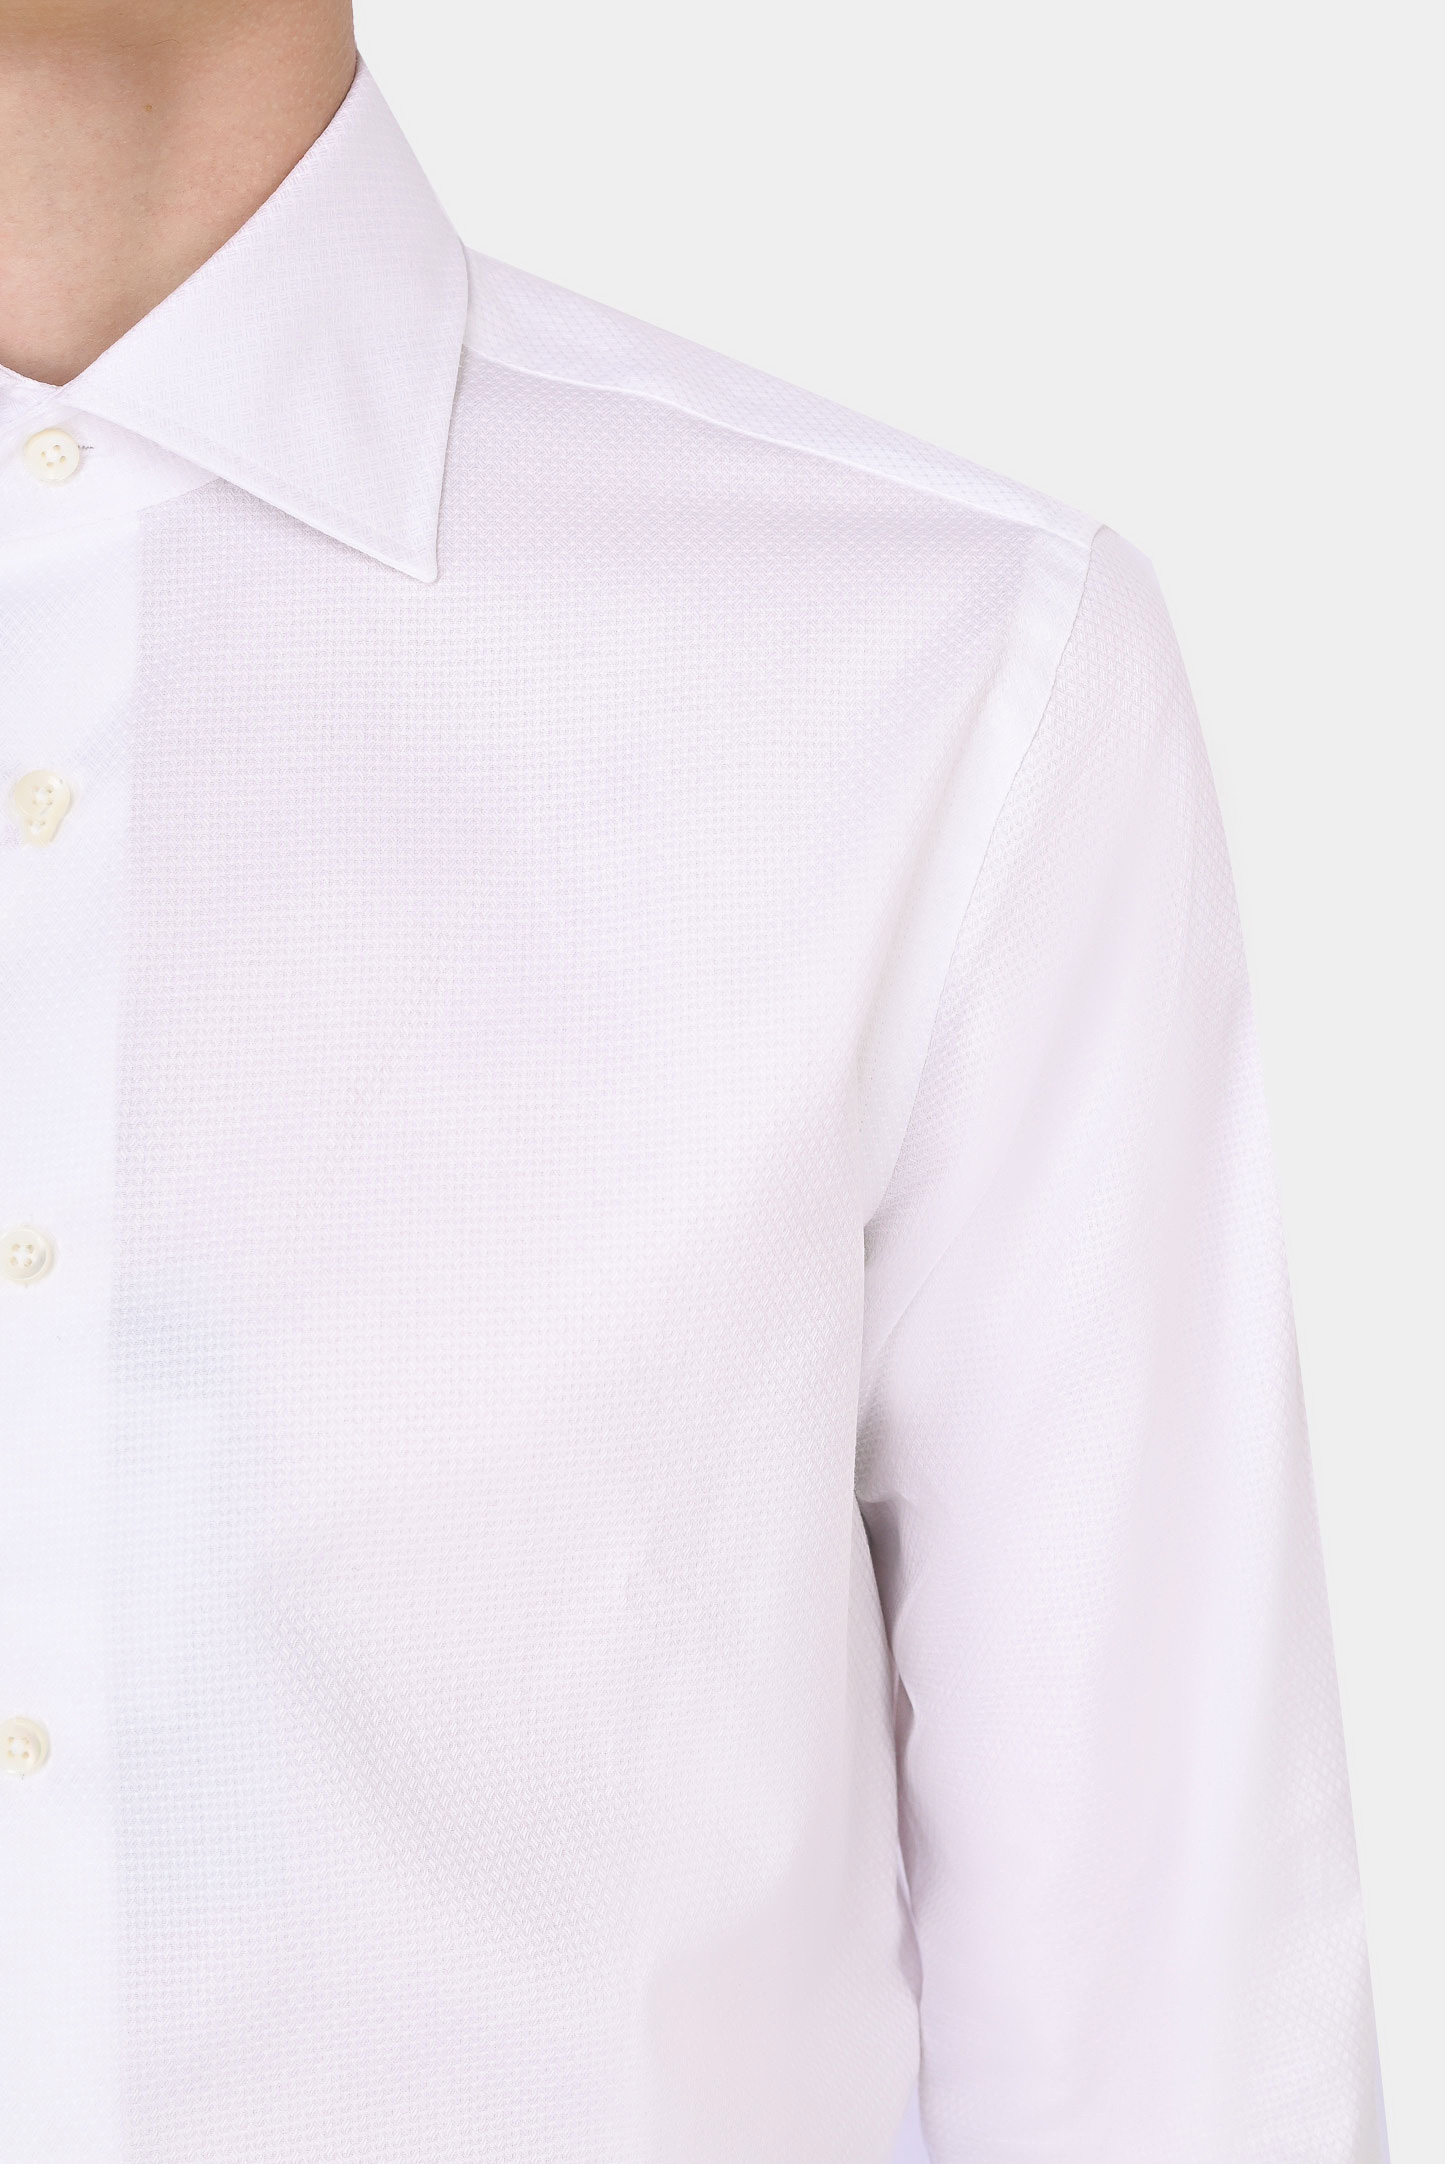 Рубашка CANALI GR02333/003, цвет: Белый, Мужской